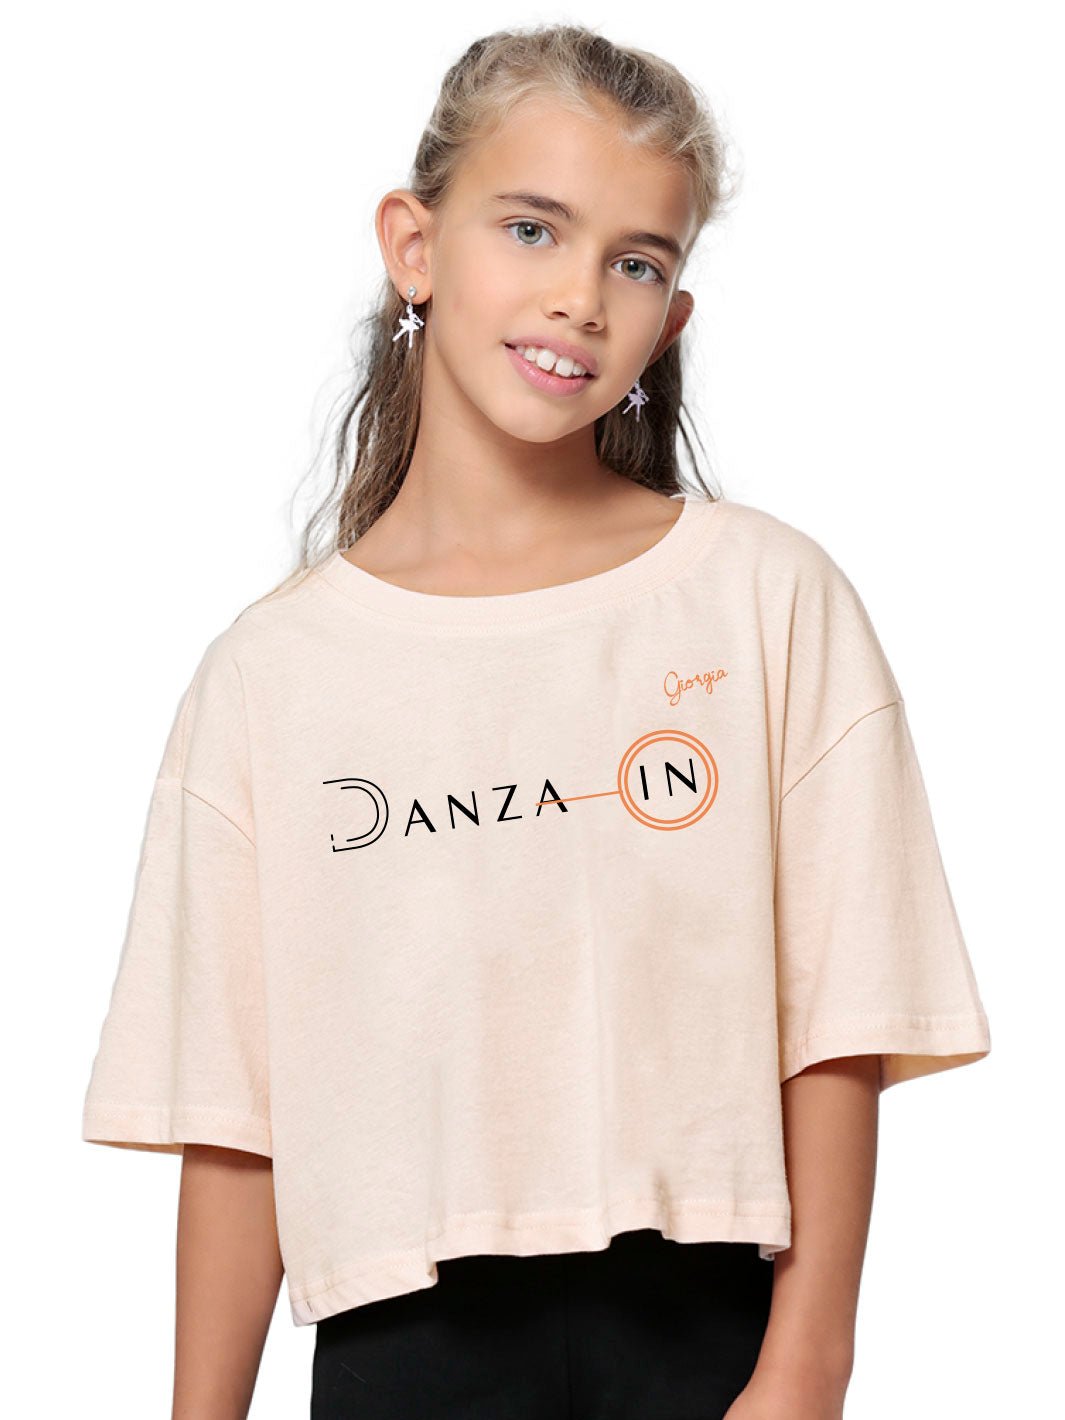 GIRLS SHORT TEE DANZA IN - Non Posso, Ho Danza.